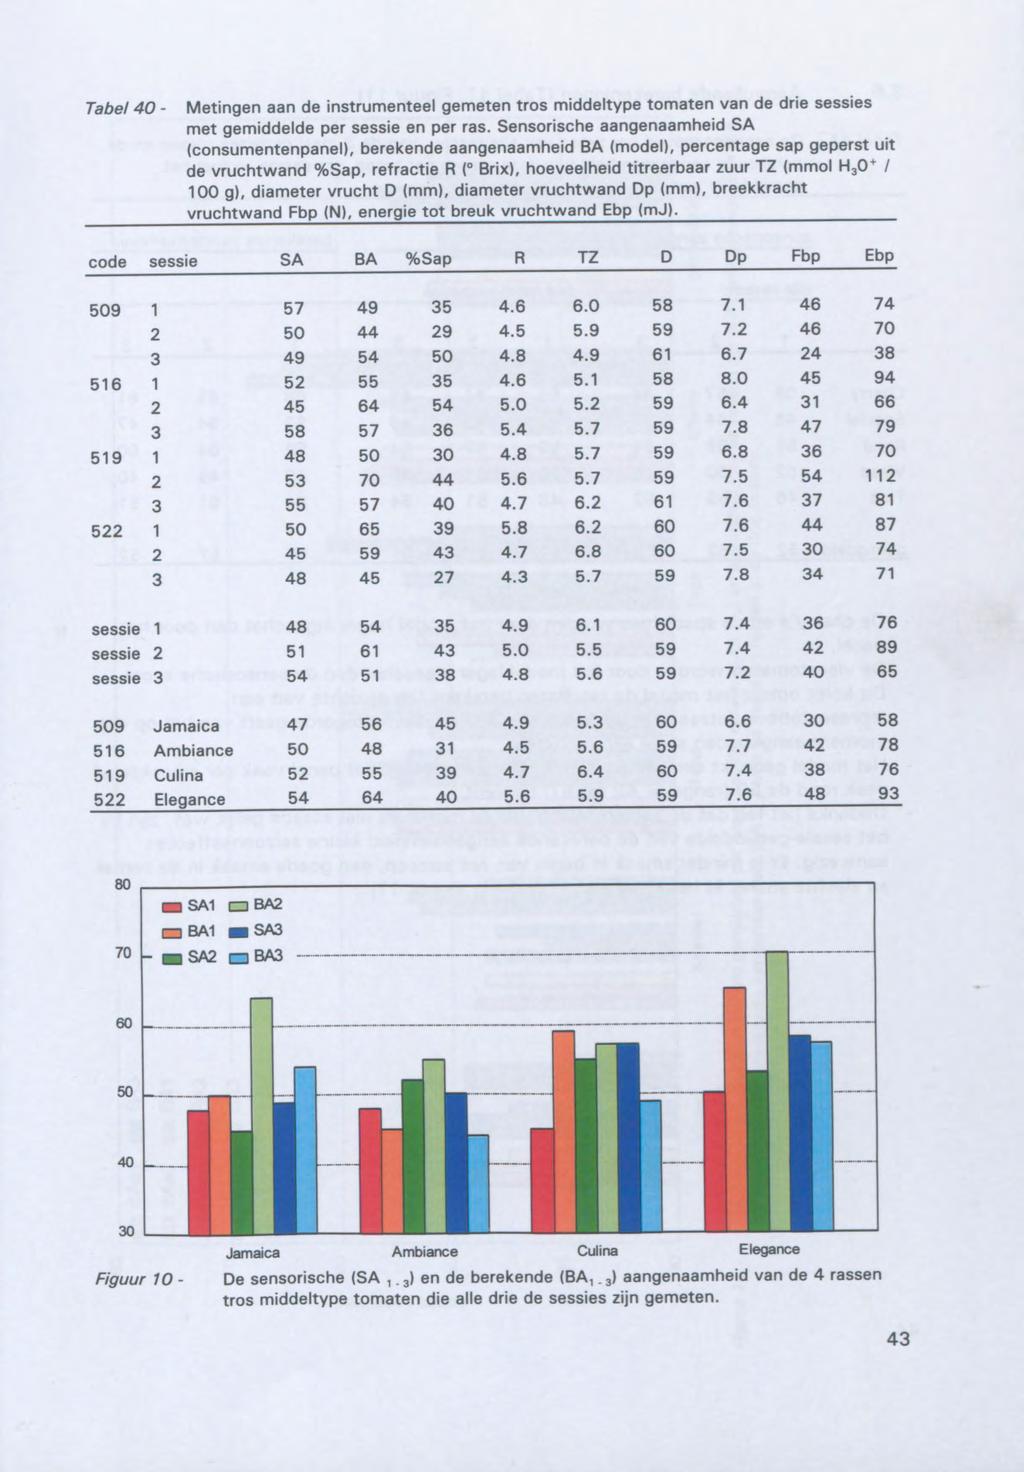 Tabel 40- Metingen aan de instrumenteel gemeten tros middeltype tomaten van de drie sessies met gemiddelde per sessie en per ras.